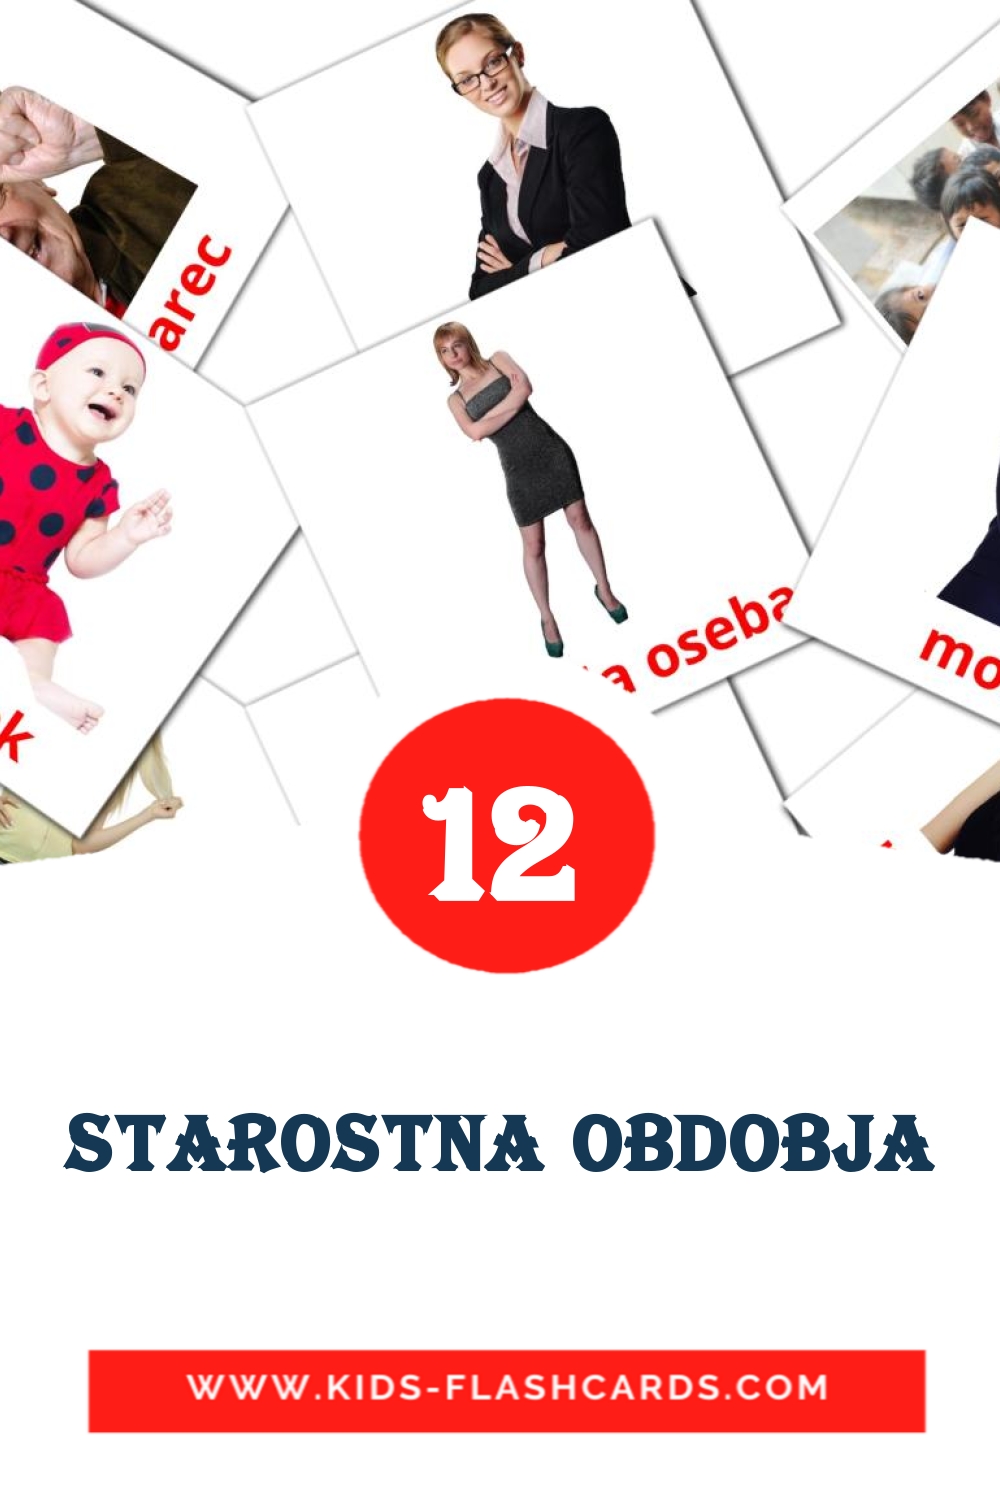 Starostna obdobja на словенском для Детского Сада (12 карточек)